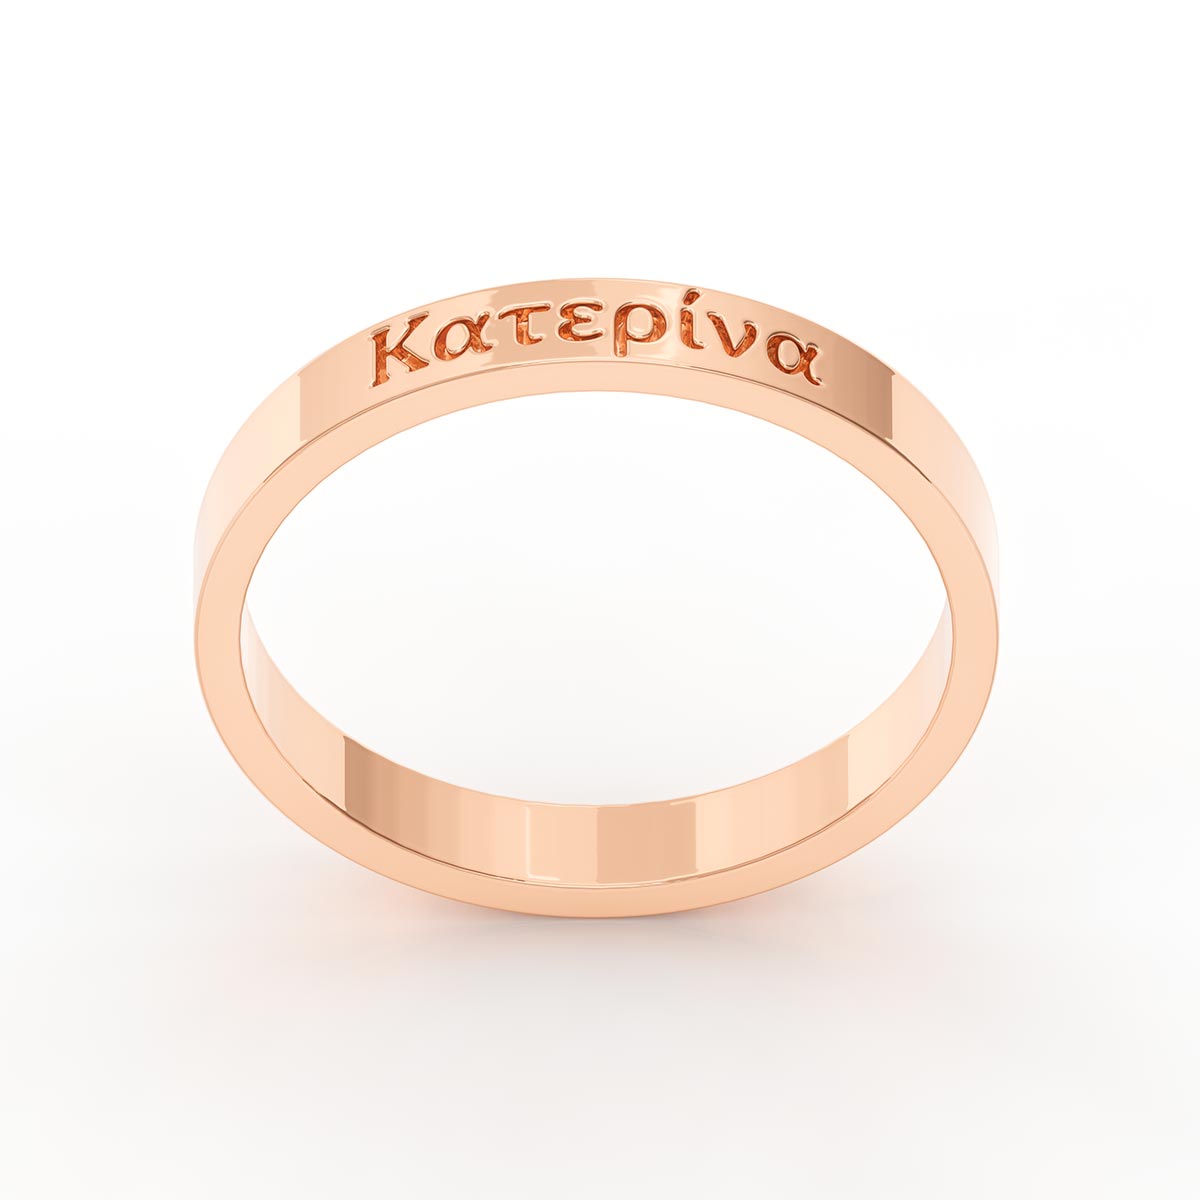 Plain Ring With Greek Name Engraving